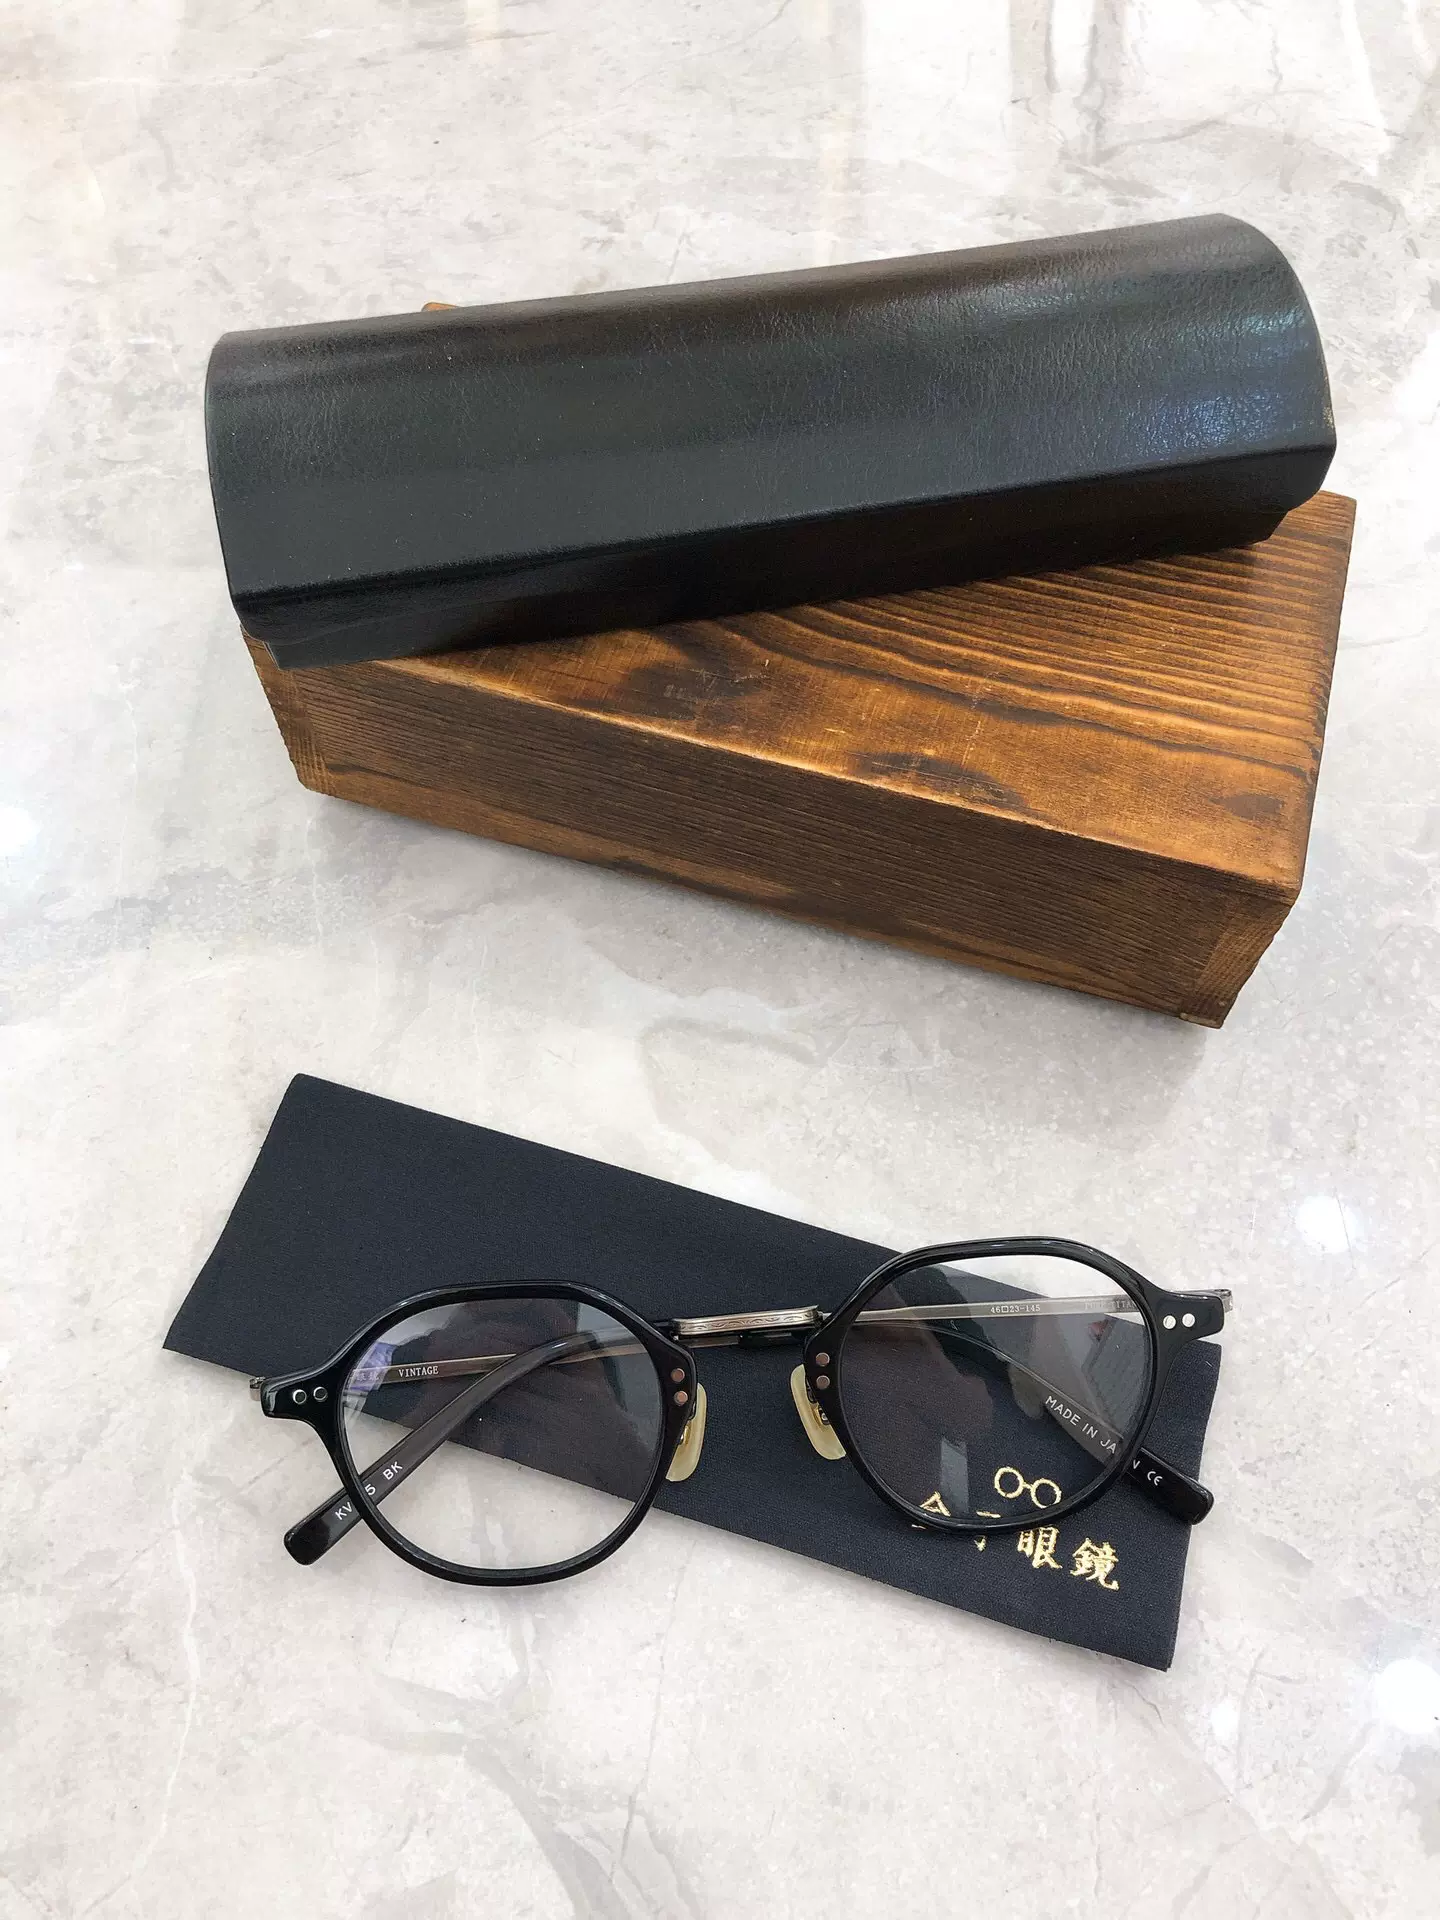 日本金子眼鏡KV-85橢圓形大框近視鏡超輕復古眼鏡架適合大臉-Taobao